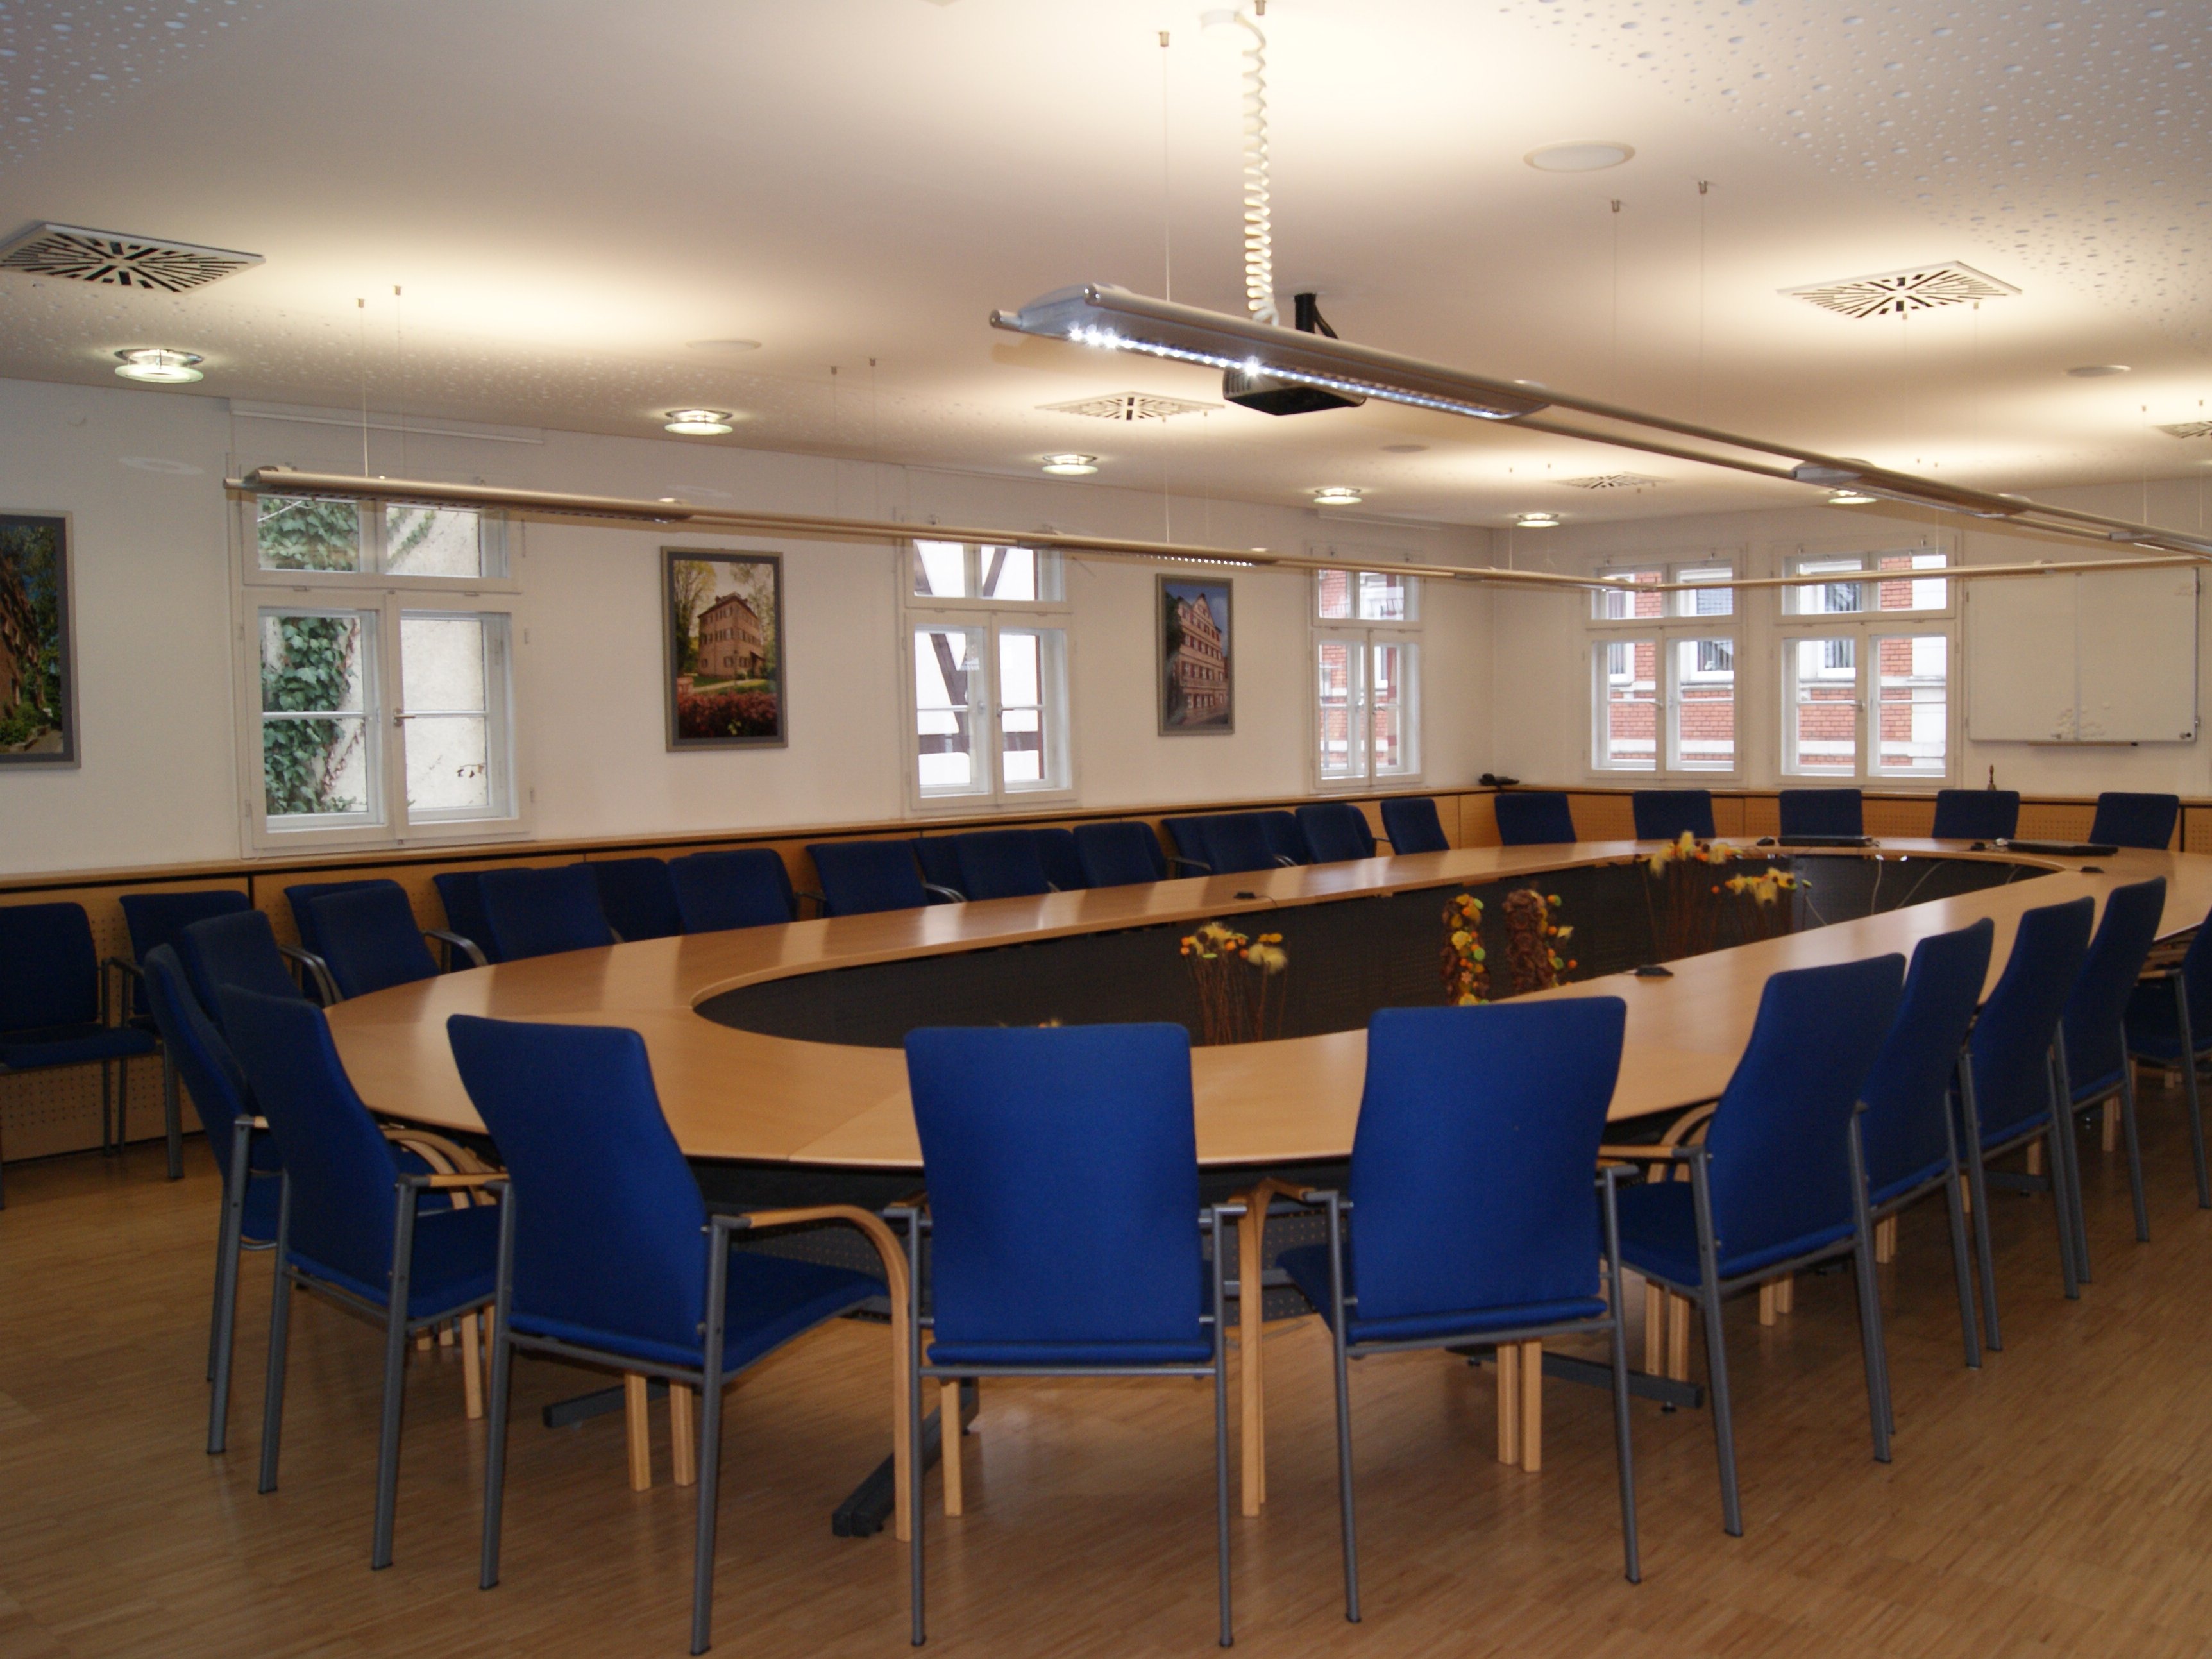 Sitzungssaal im Rathaus mit ovalem Tisch und Bildmotiven von den Schlössern